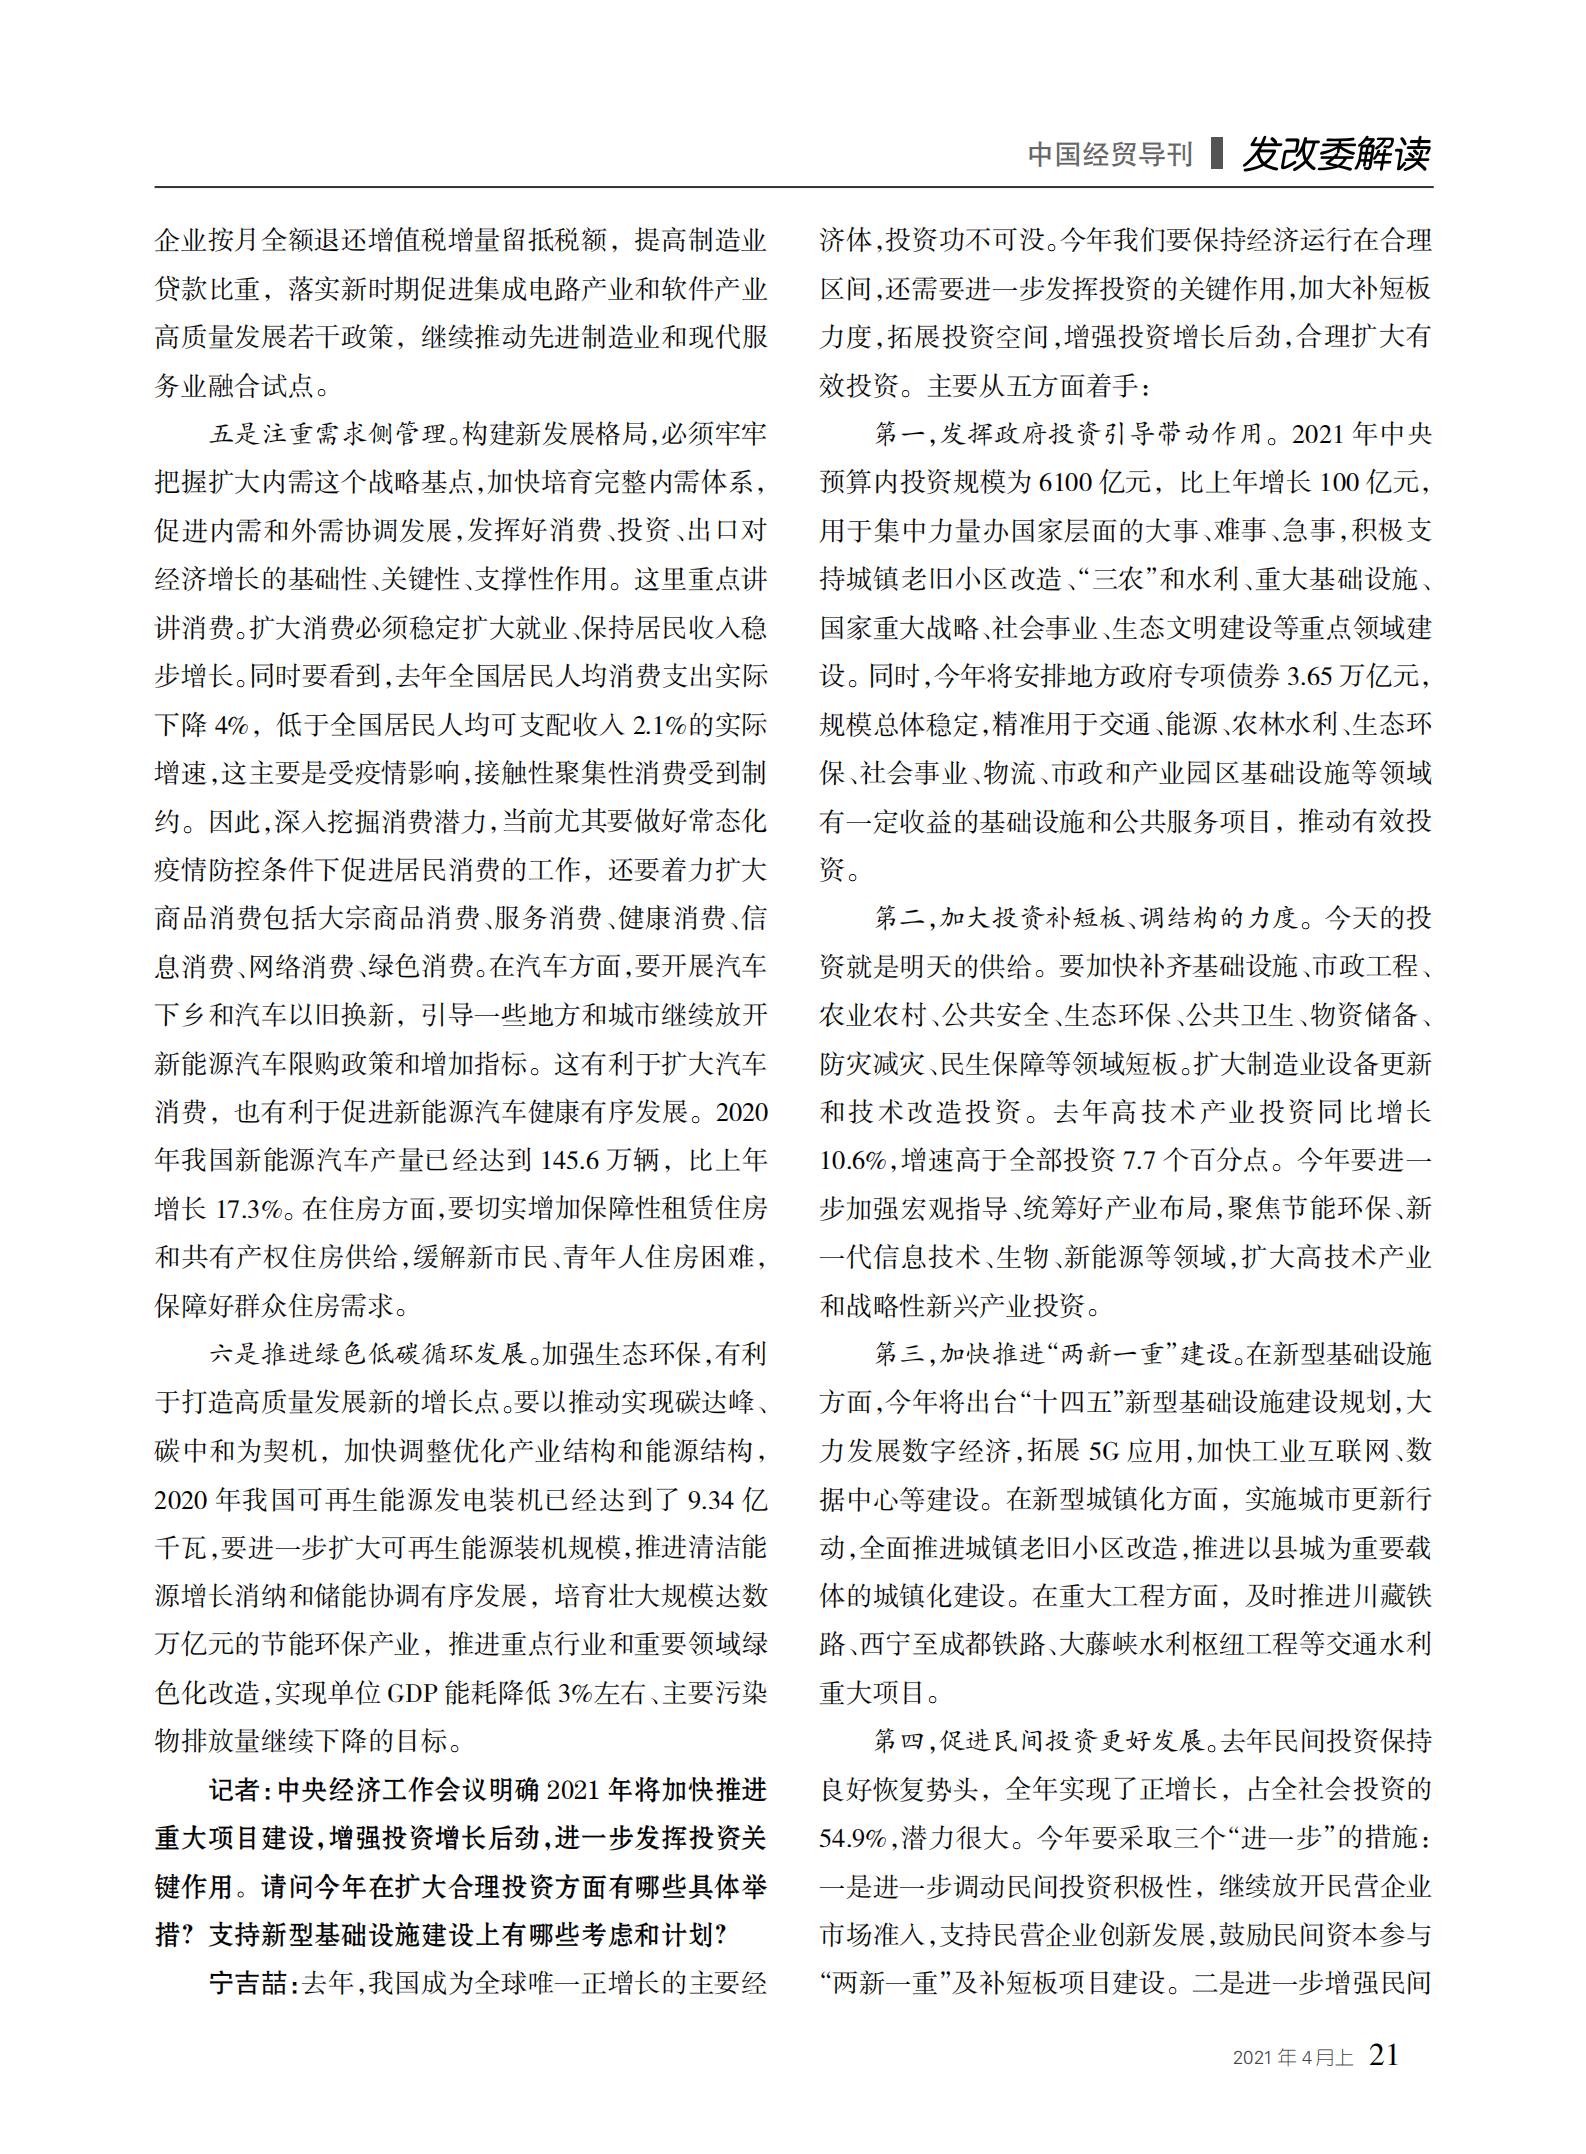 中国经贸导刊2021-4上印刷_20.jpg